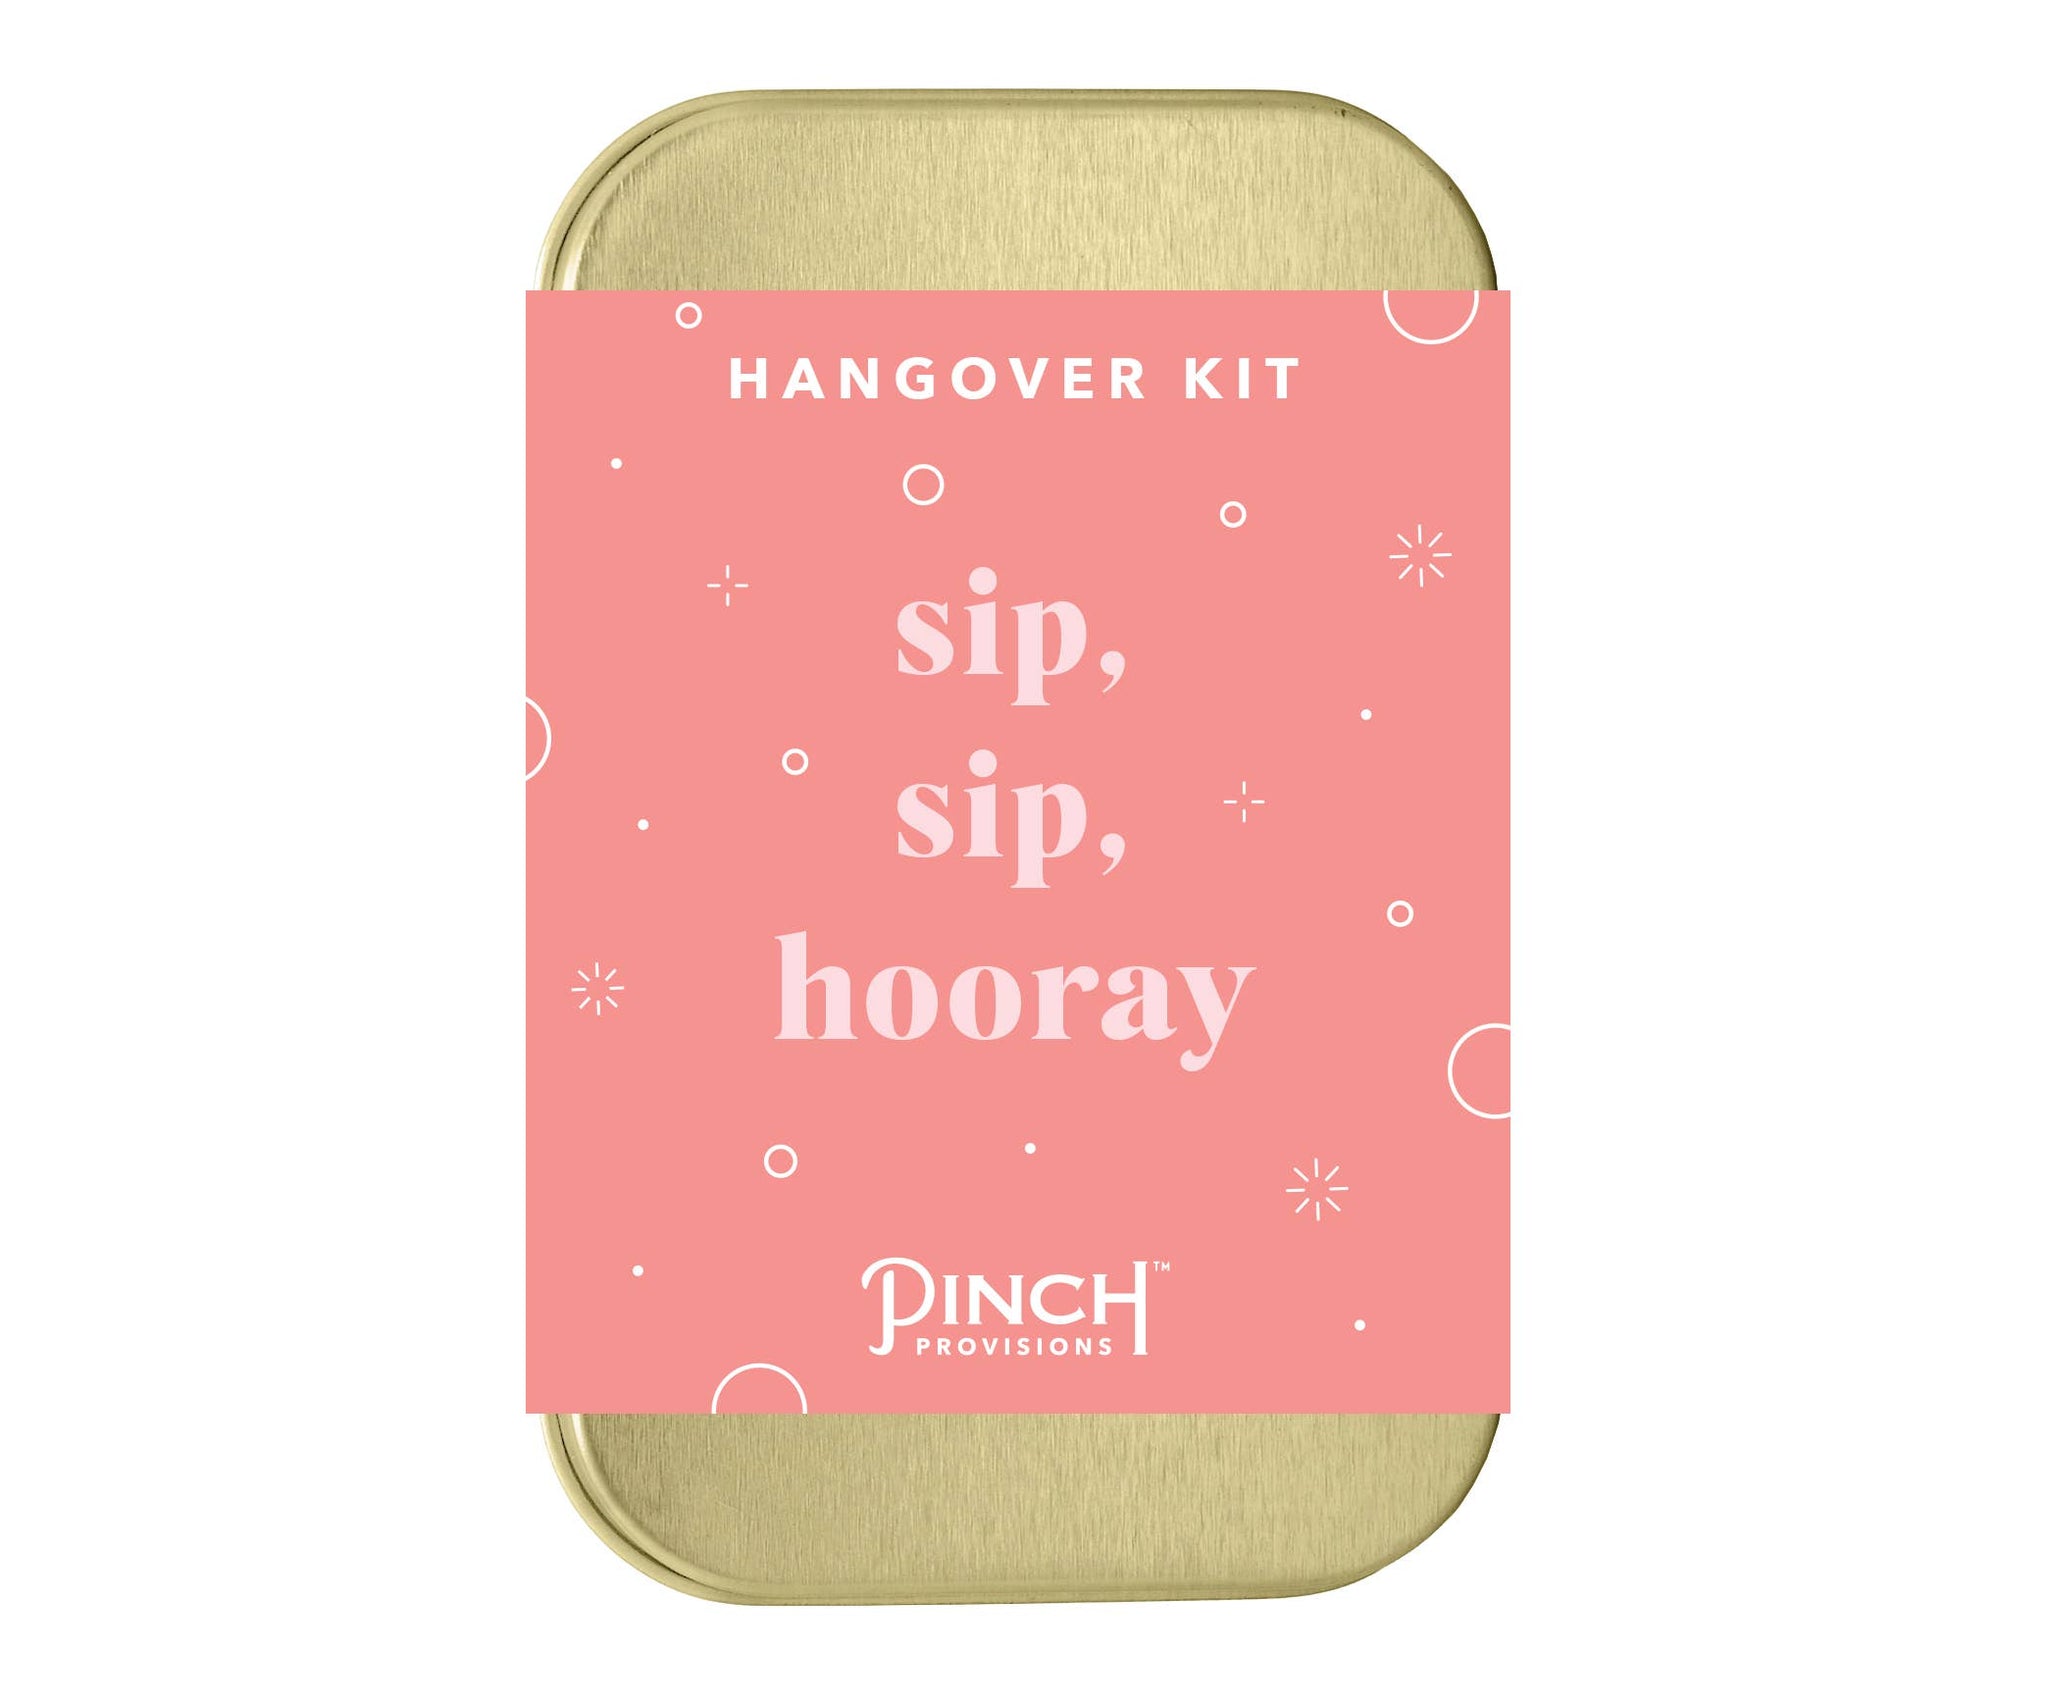 Pinch Provisions - Hangover Kits